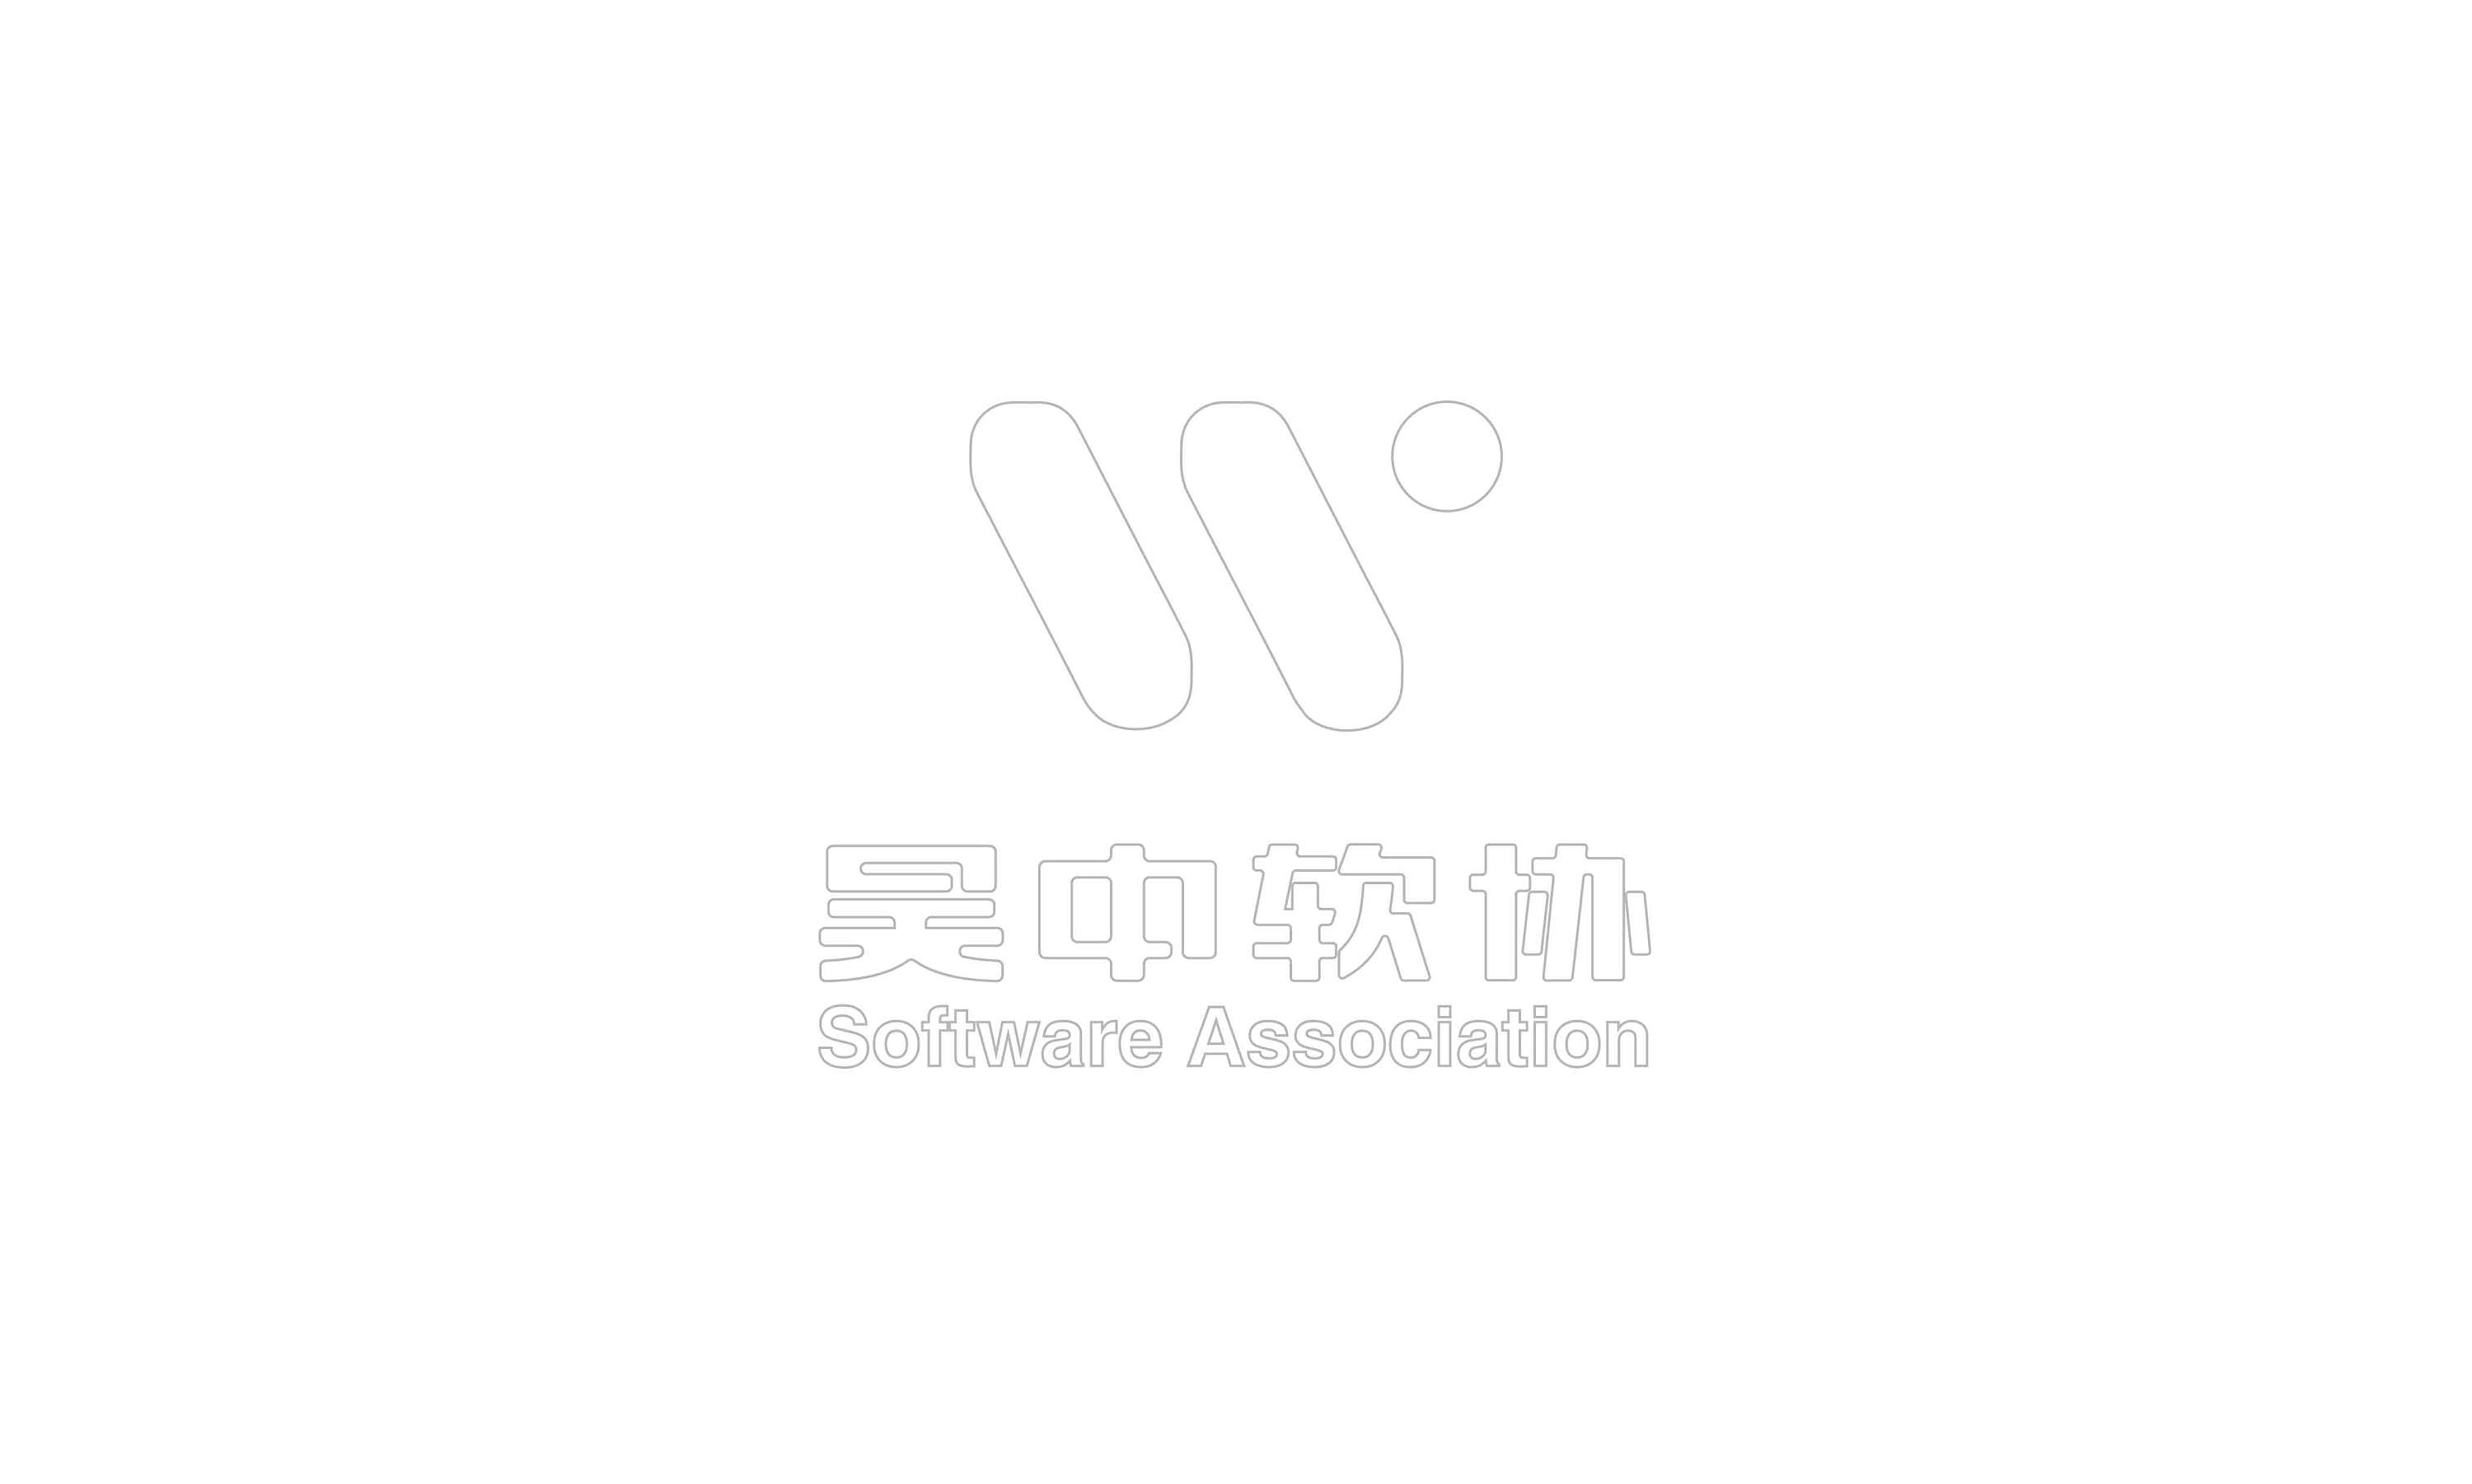 苏州市吴中区软件协会logo提案